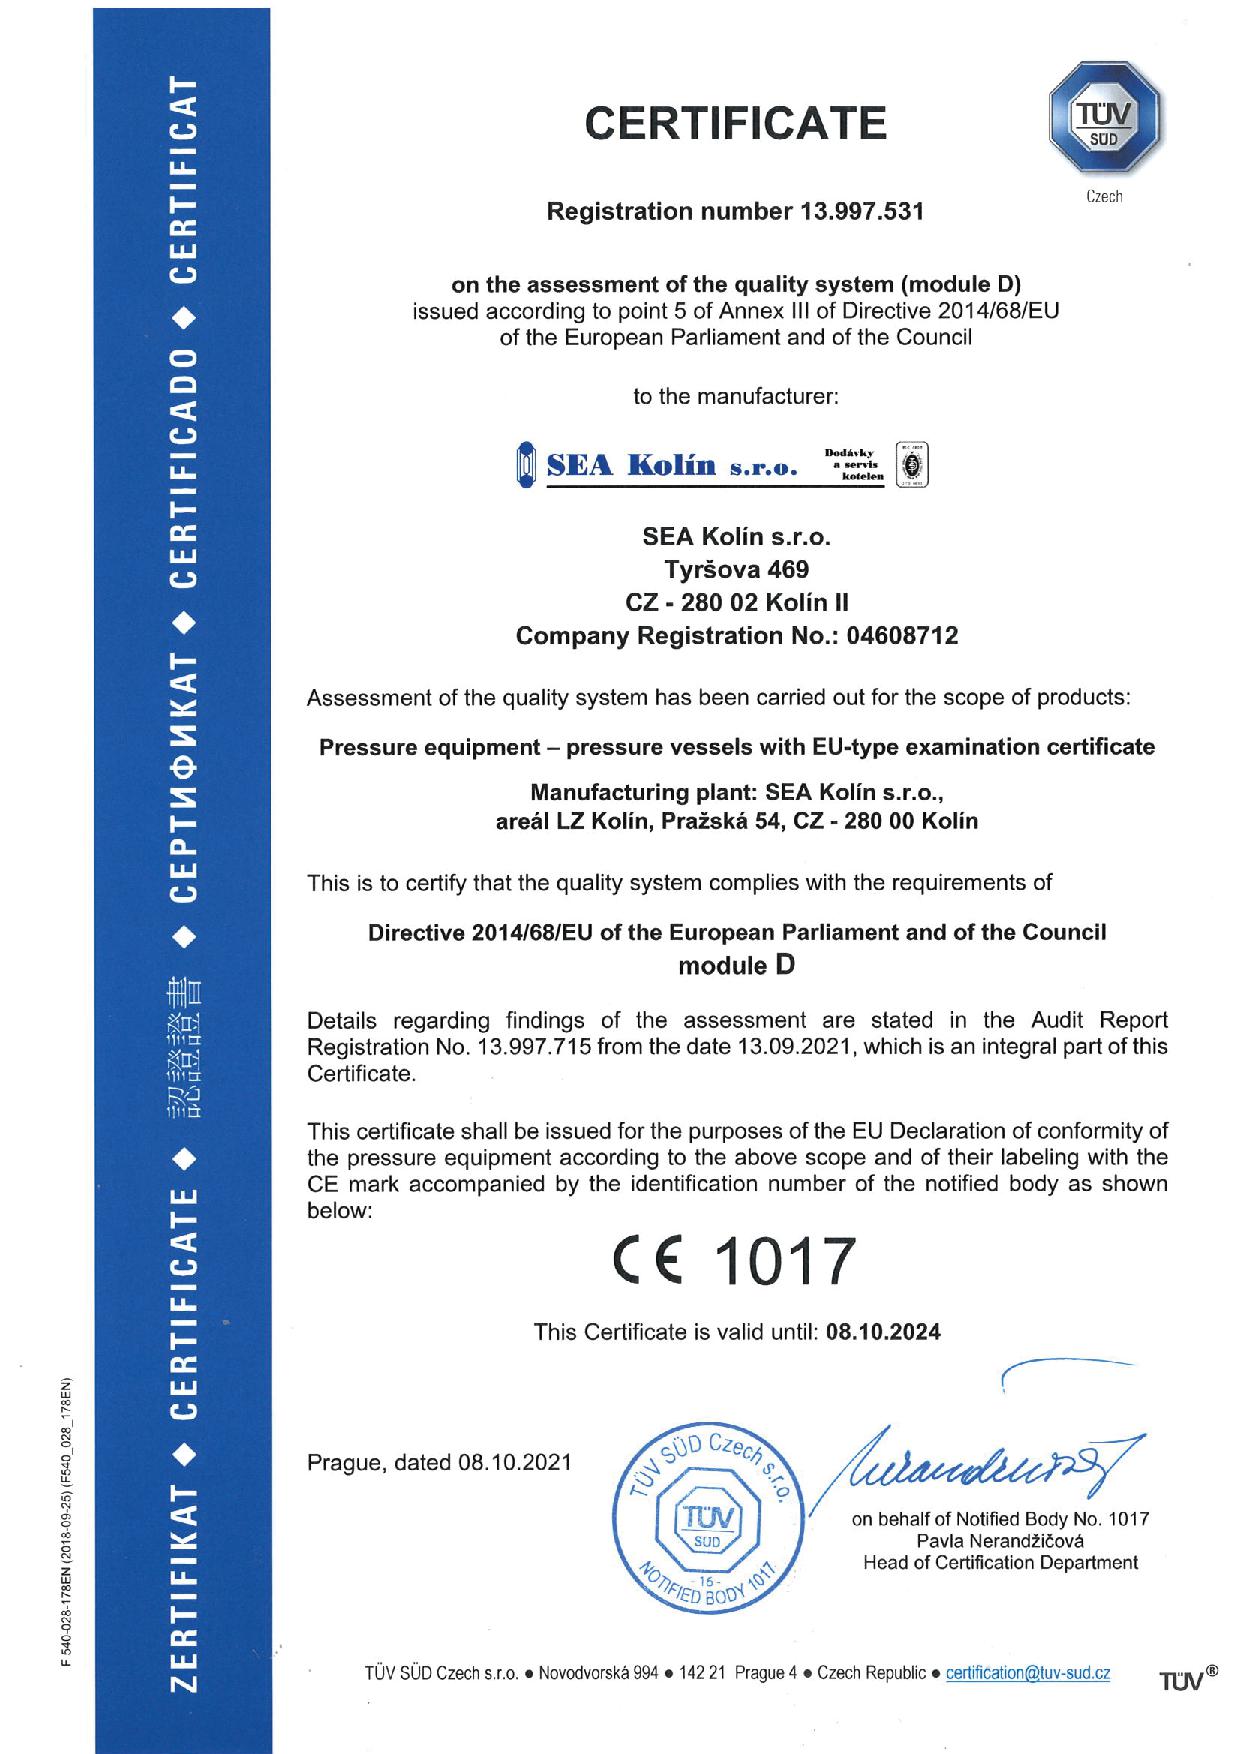 certifikat-smernice_2014-68-eu_modul_D-en